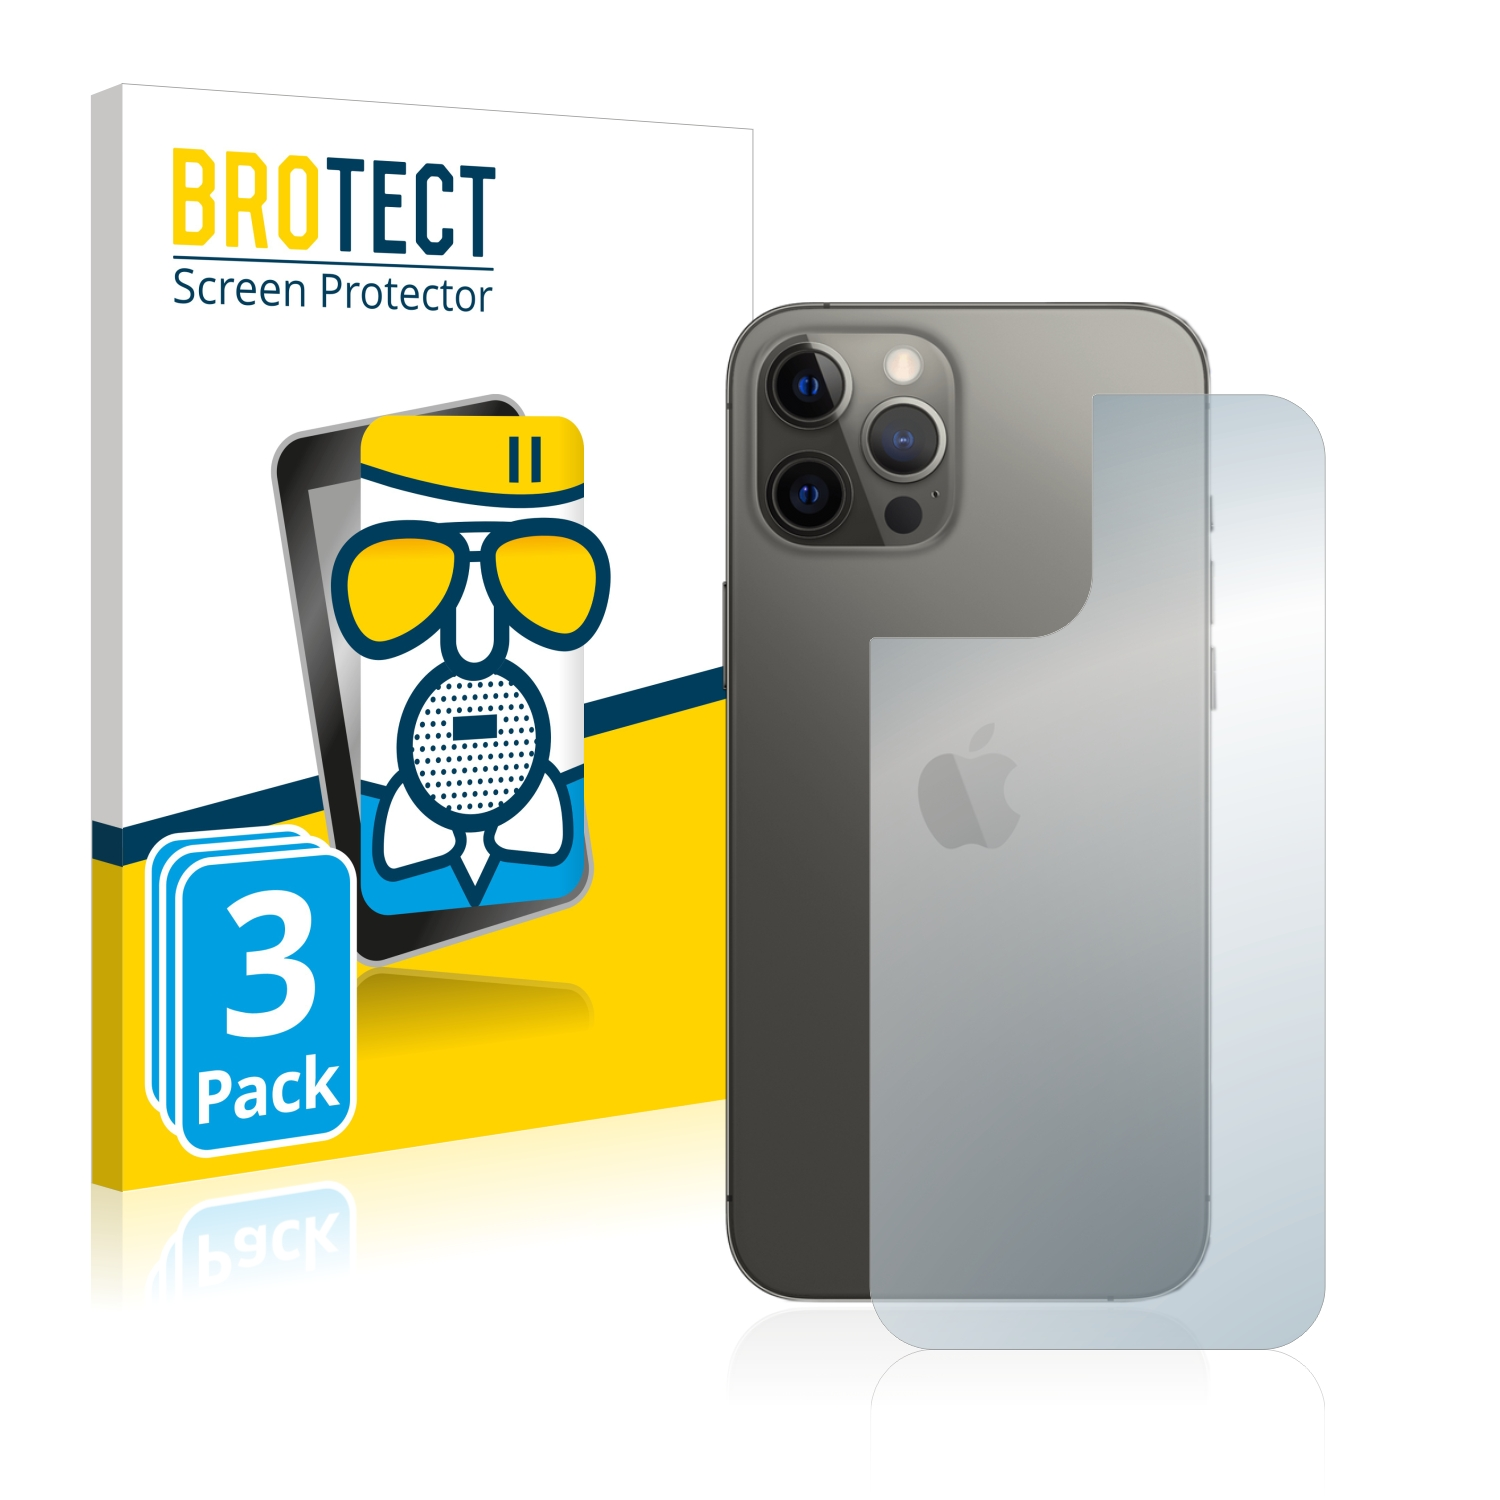 BROTECT 3x Airglass iPhone matte 12 Pro Apple Schutzfolie(für Max)